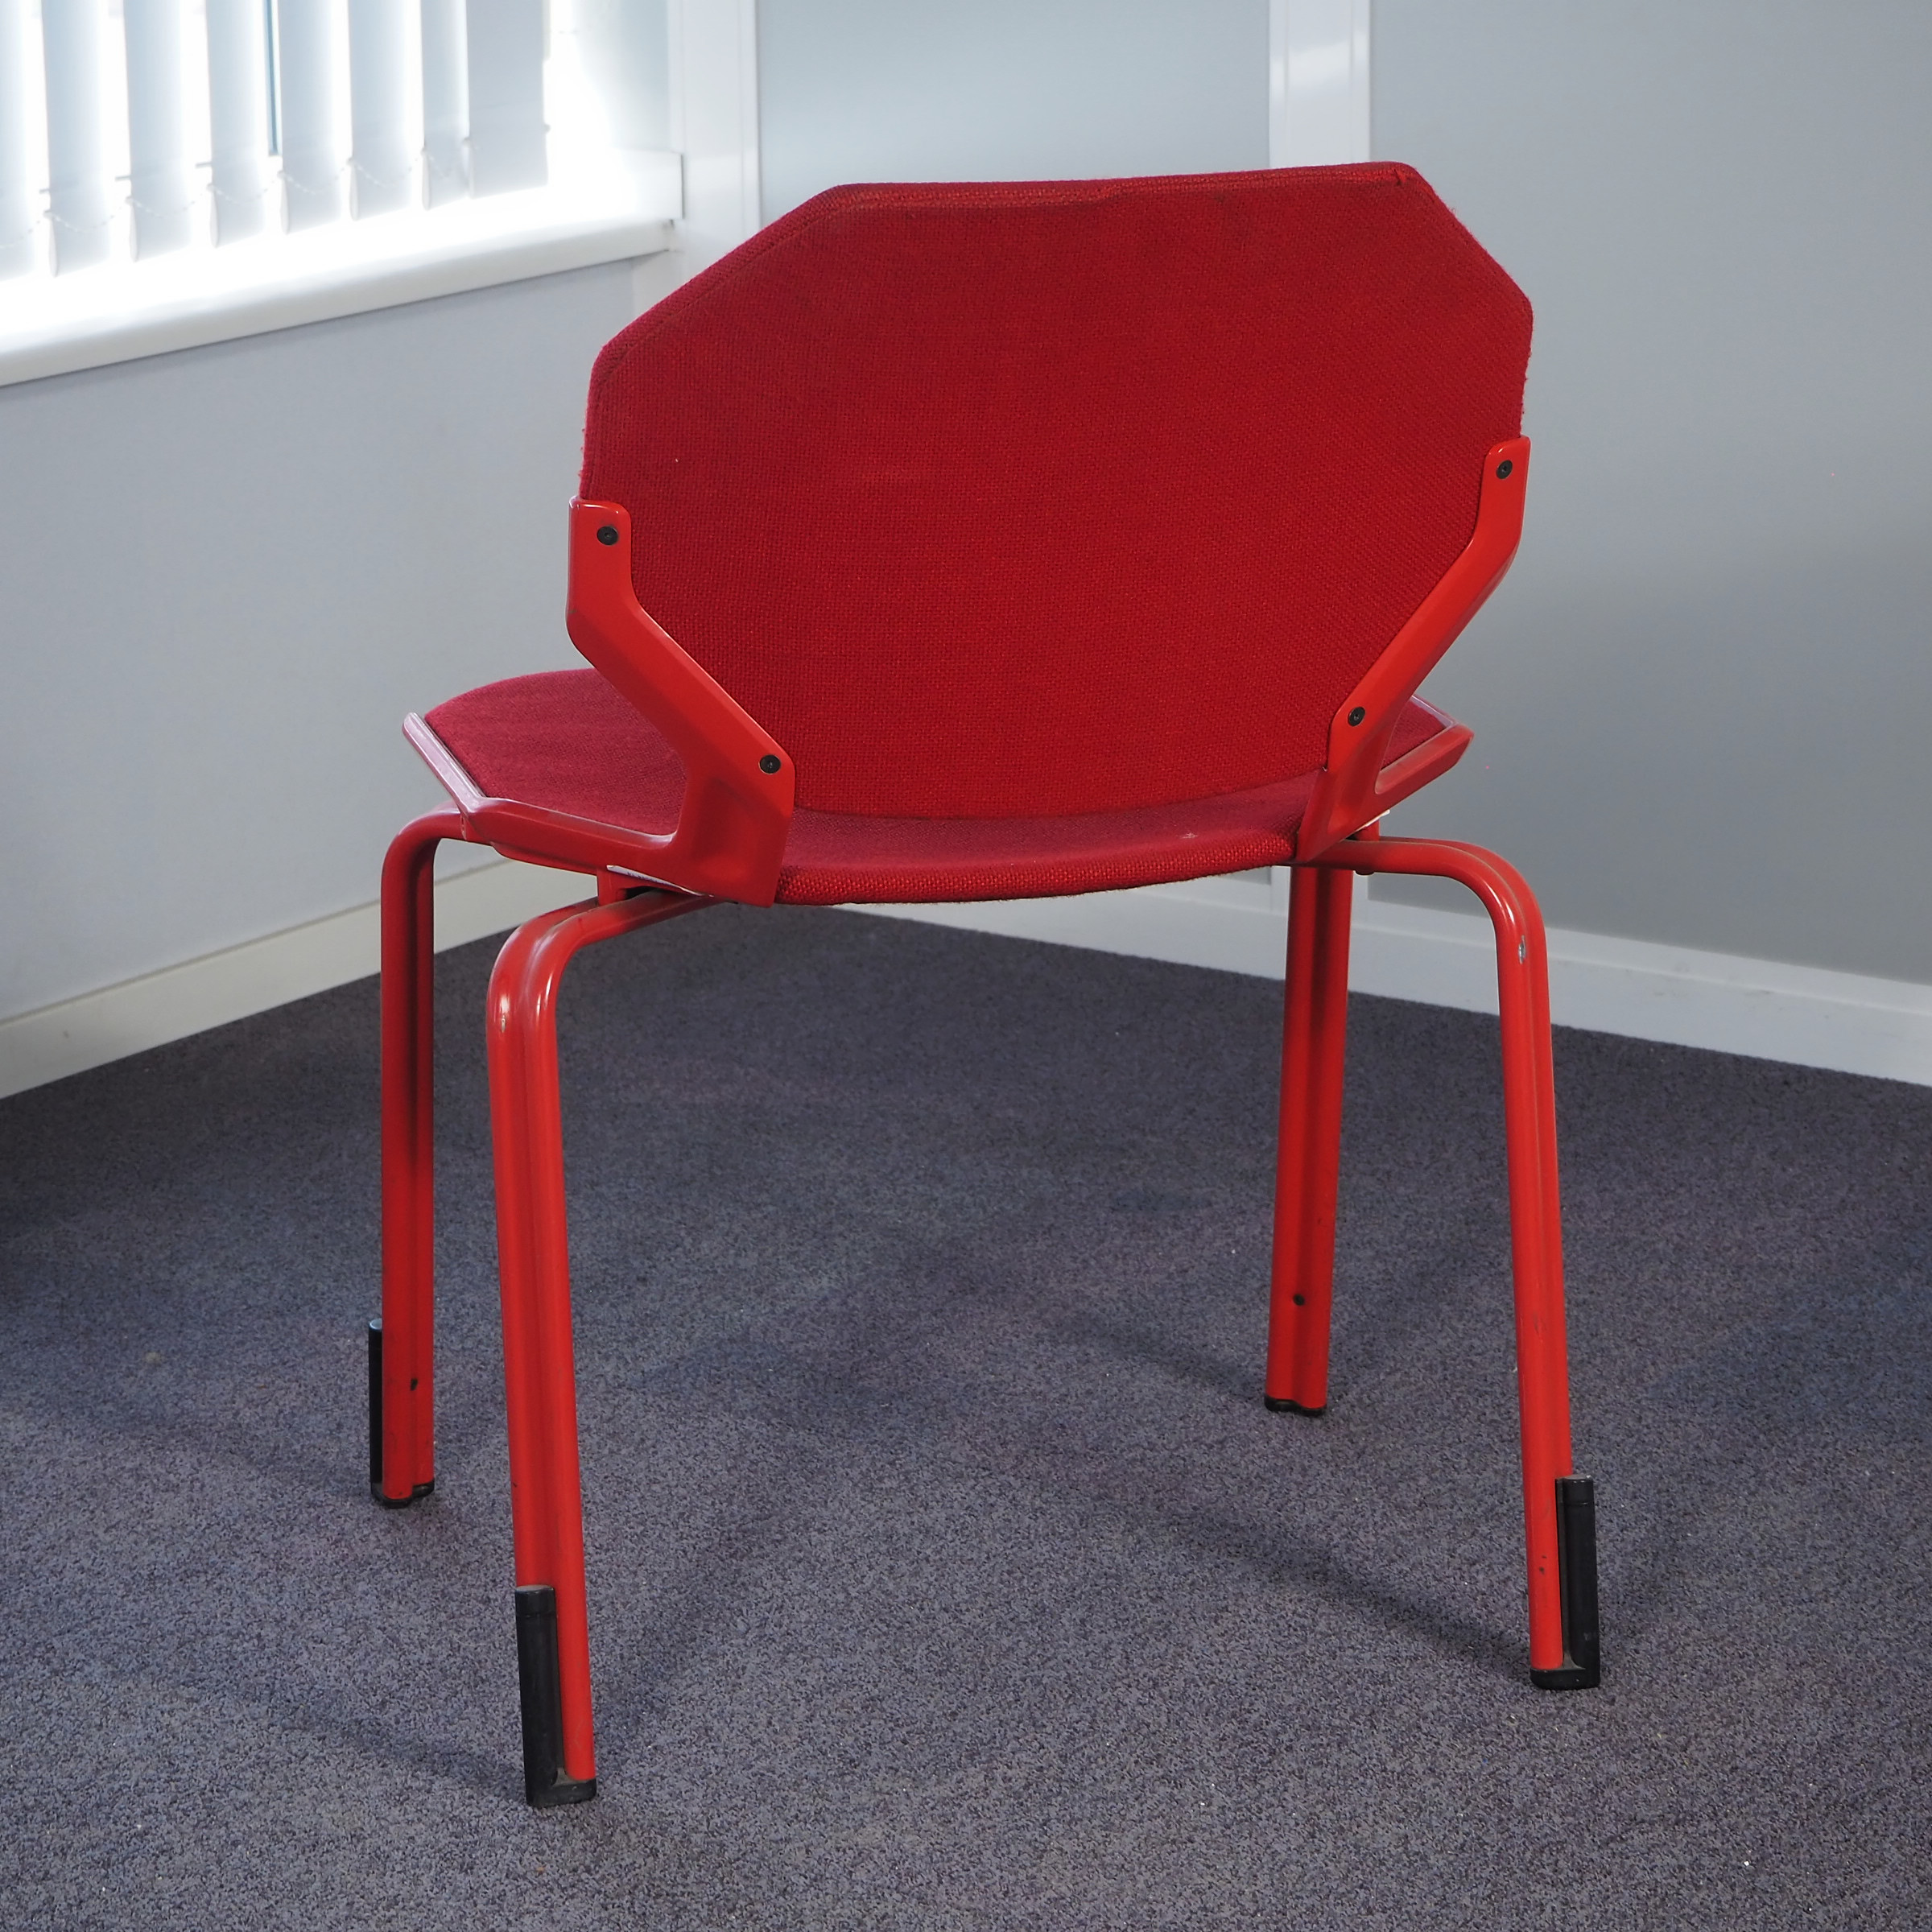 Hexagonal office chair by Fröscher for Sitform